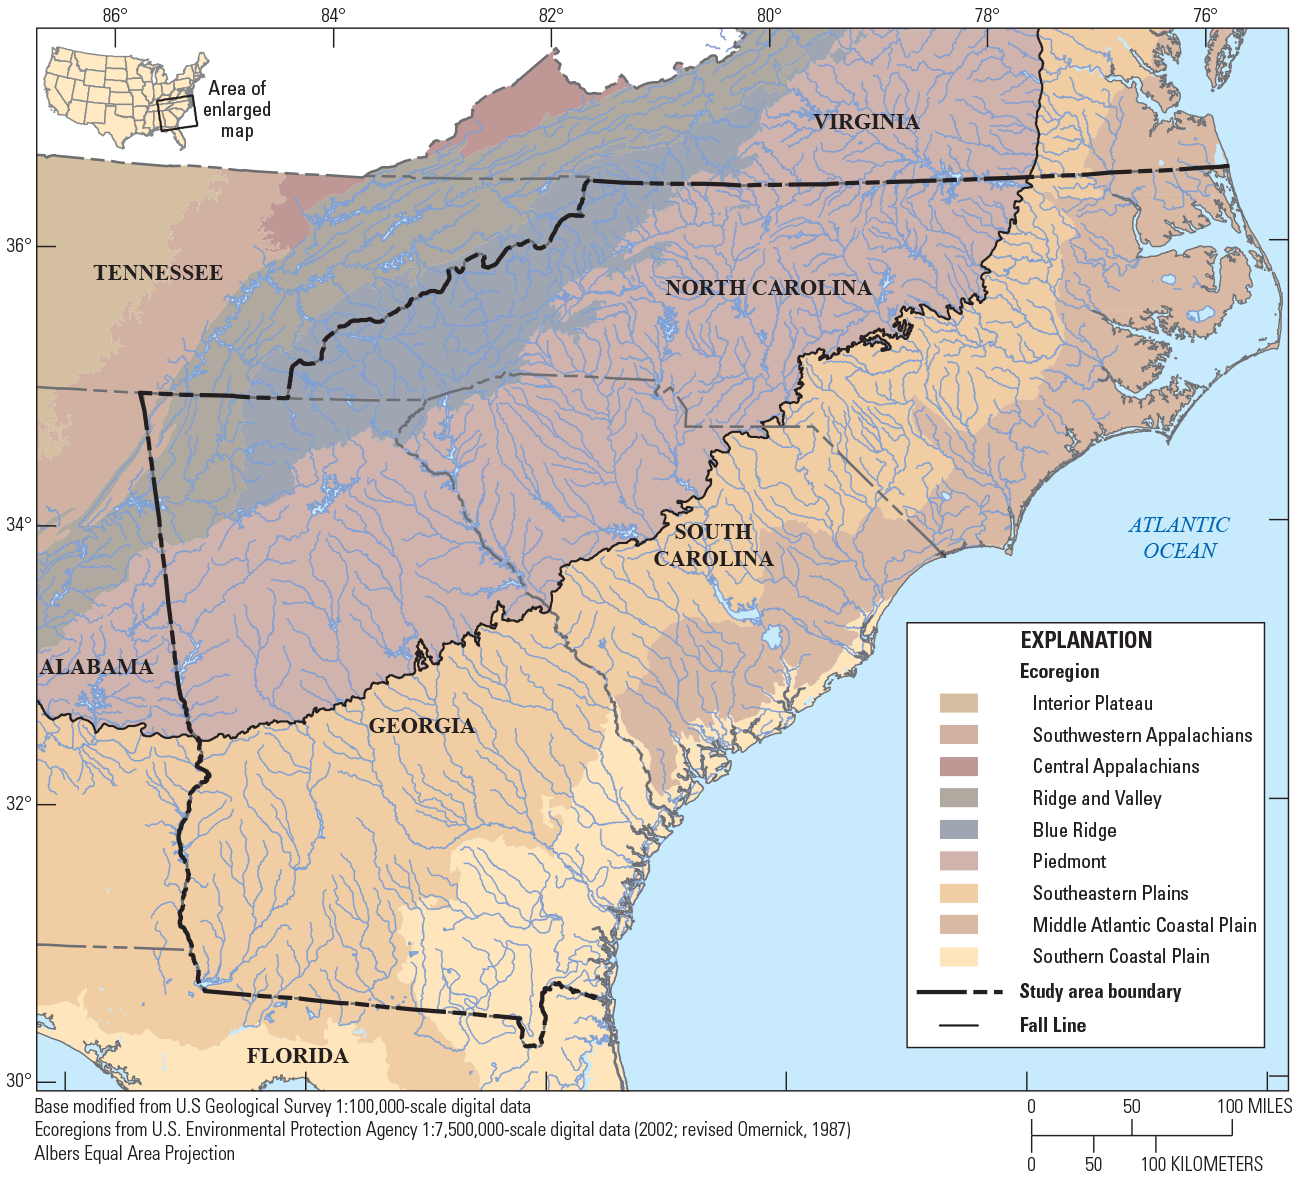 The study area of Georgia, South Carolina, North Carolina with ecoregions and hydrologic
                        features.